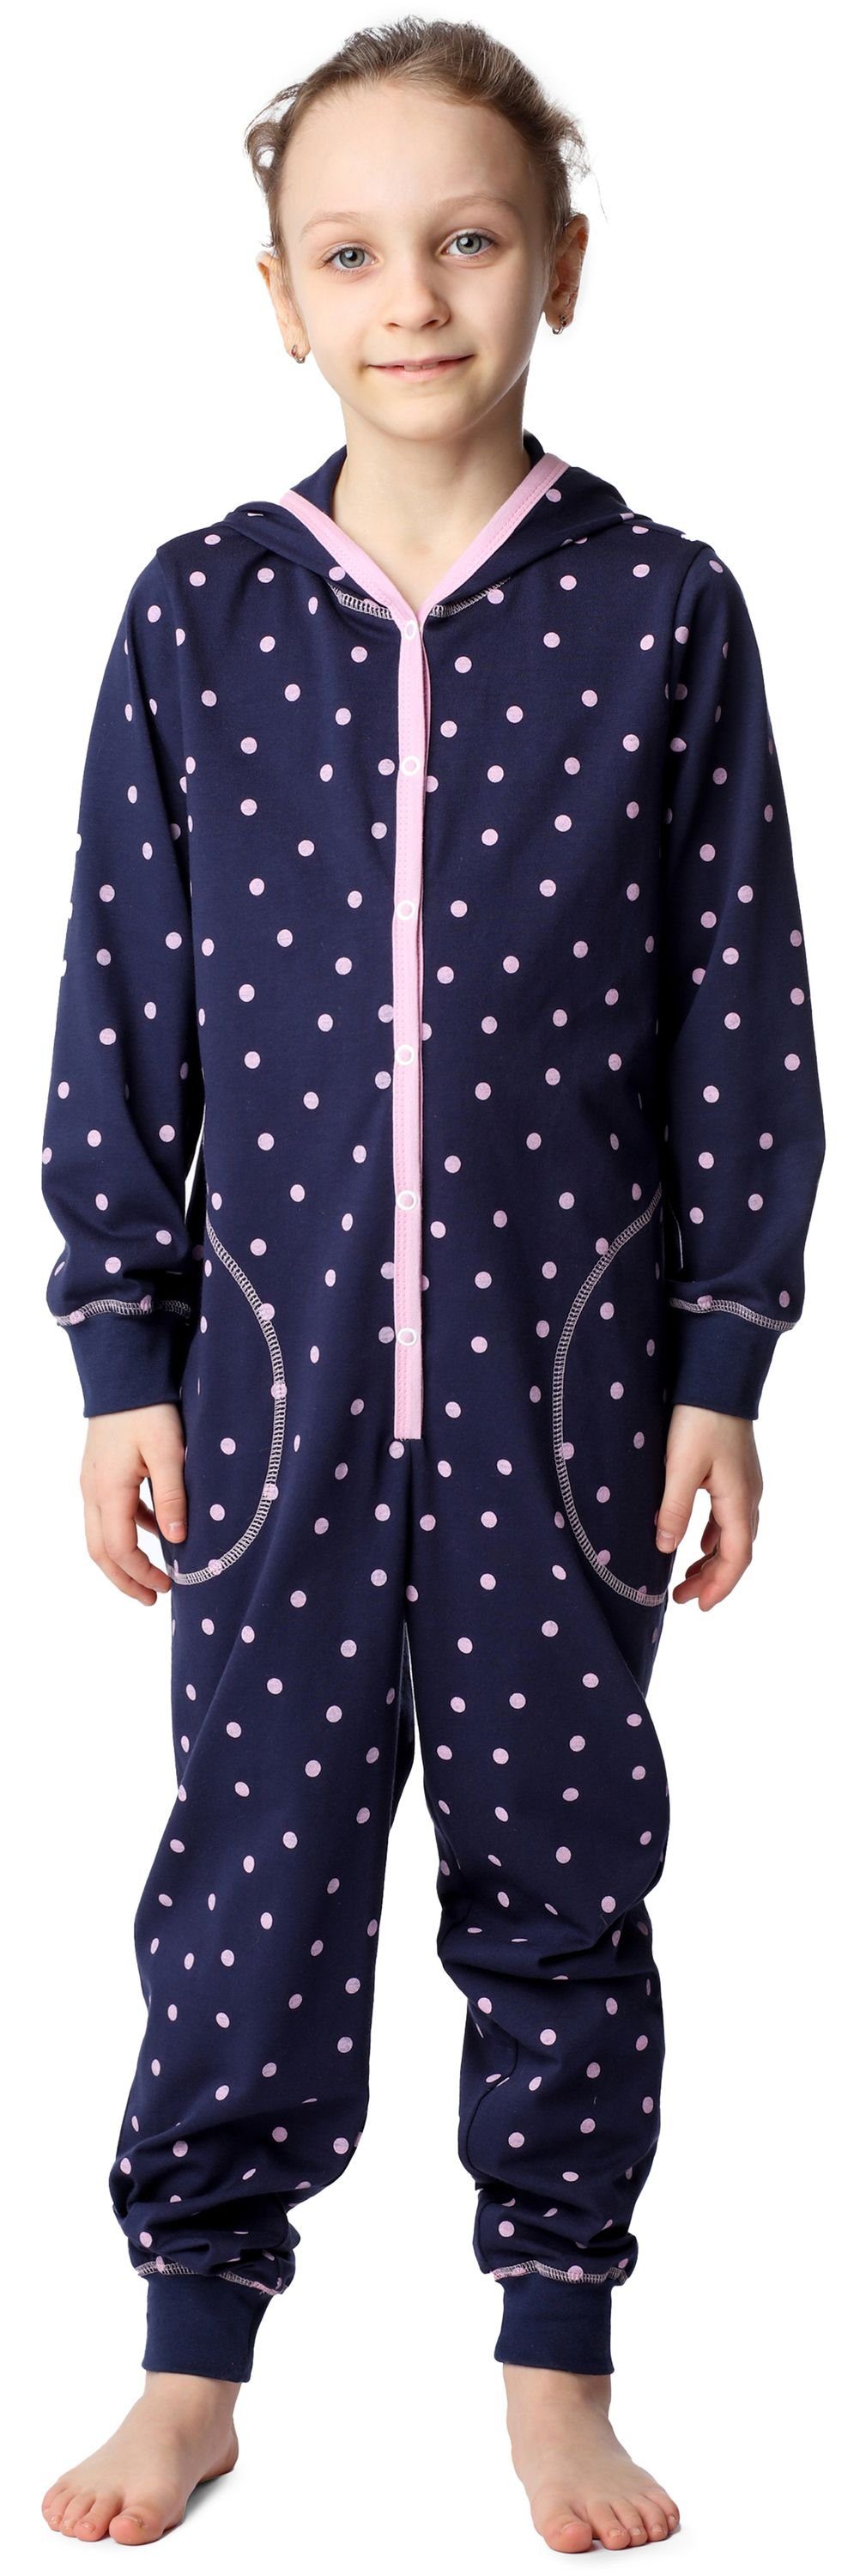 Merry Style Schlafanzug Mädchen Schlafoverall mit Kapuze MS10-223 Marineblau Rosa Punkte